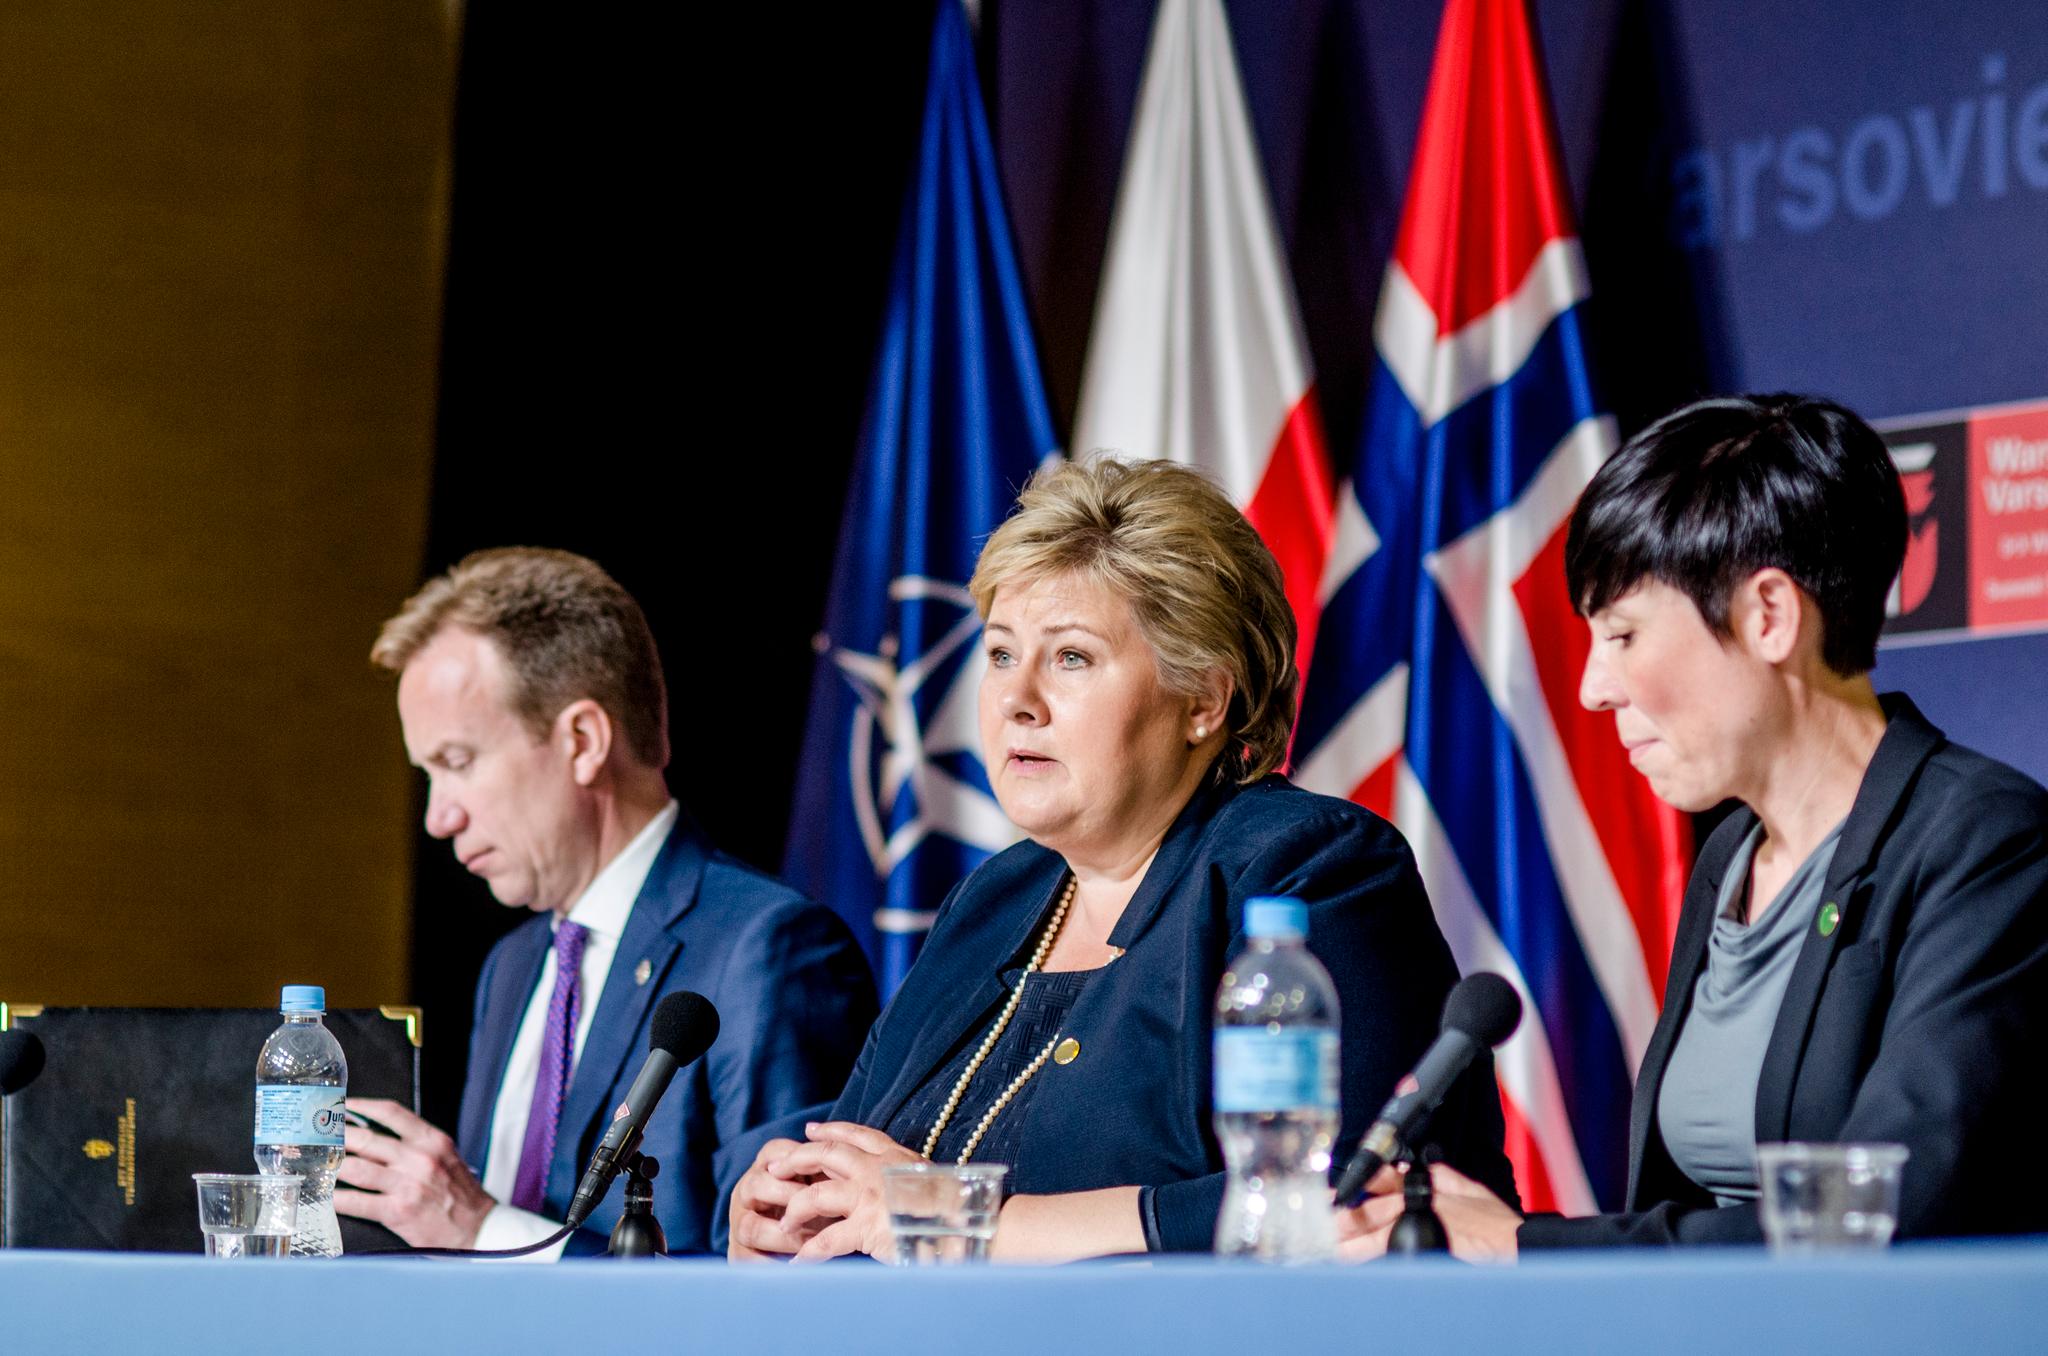 Statsminister Erna Solberg (H) holder pressekonferanse sammen med utenriksminister Børge Brende (H) og forsvarsminister Ine Eriksen Søreide (H) under det siste NATO-toppmøtet, i Warszawa, Polen.